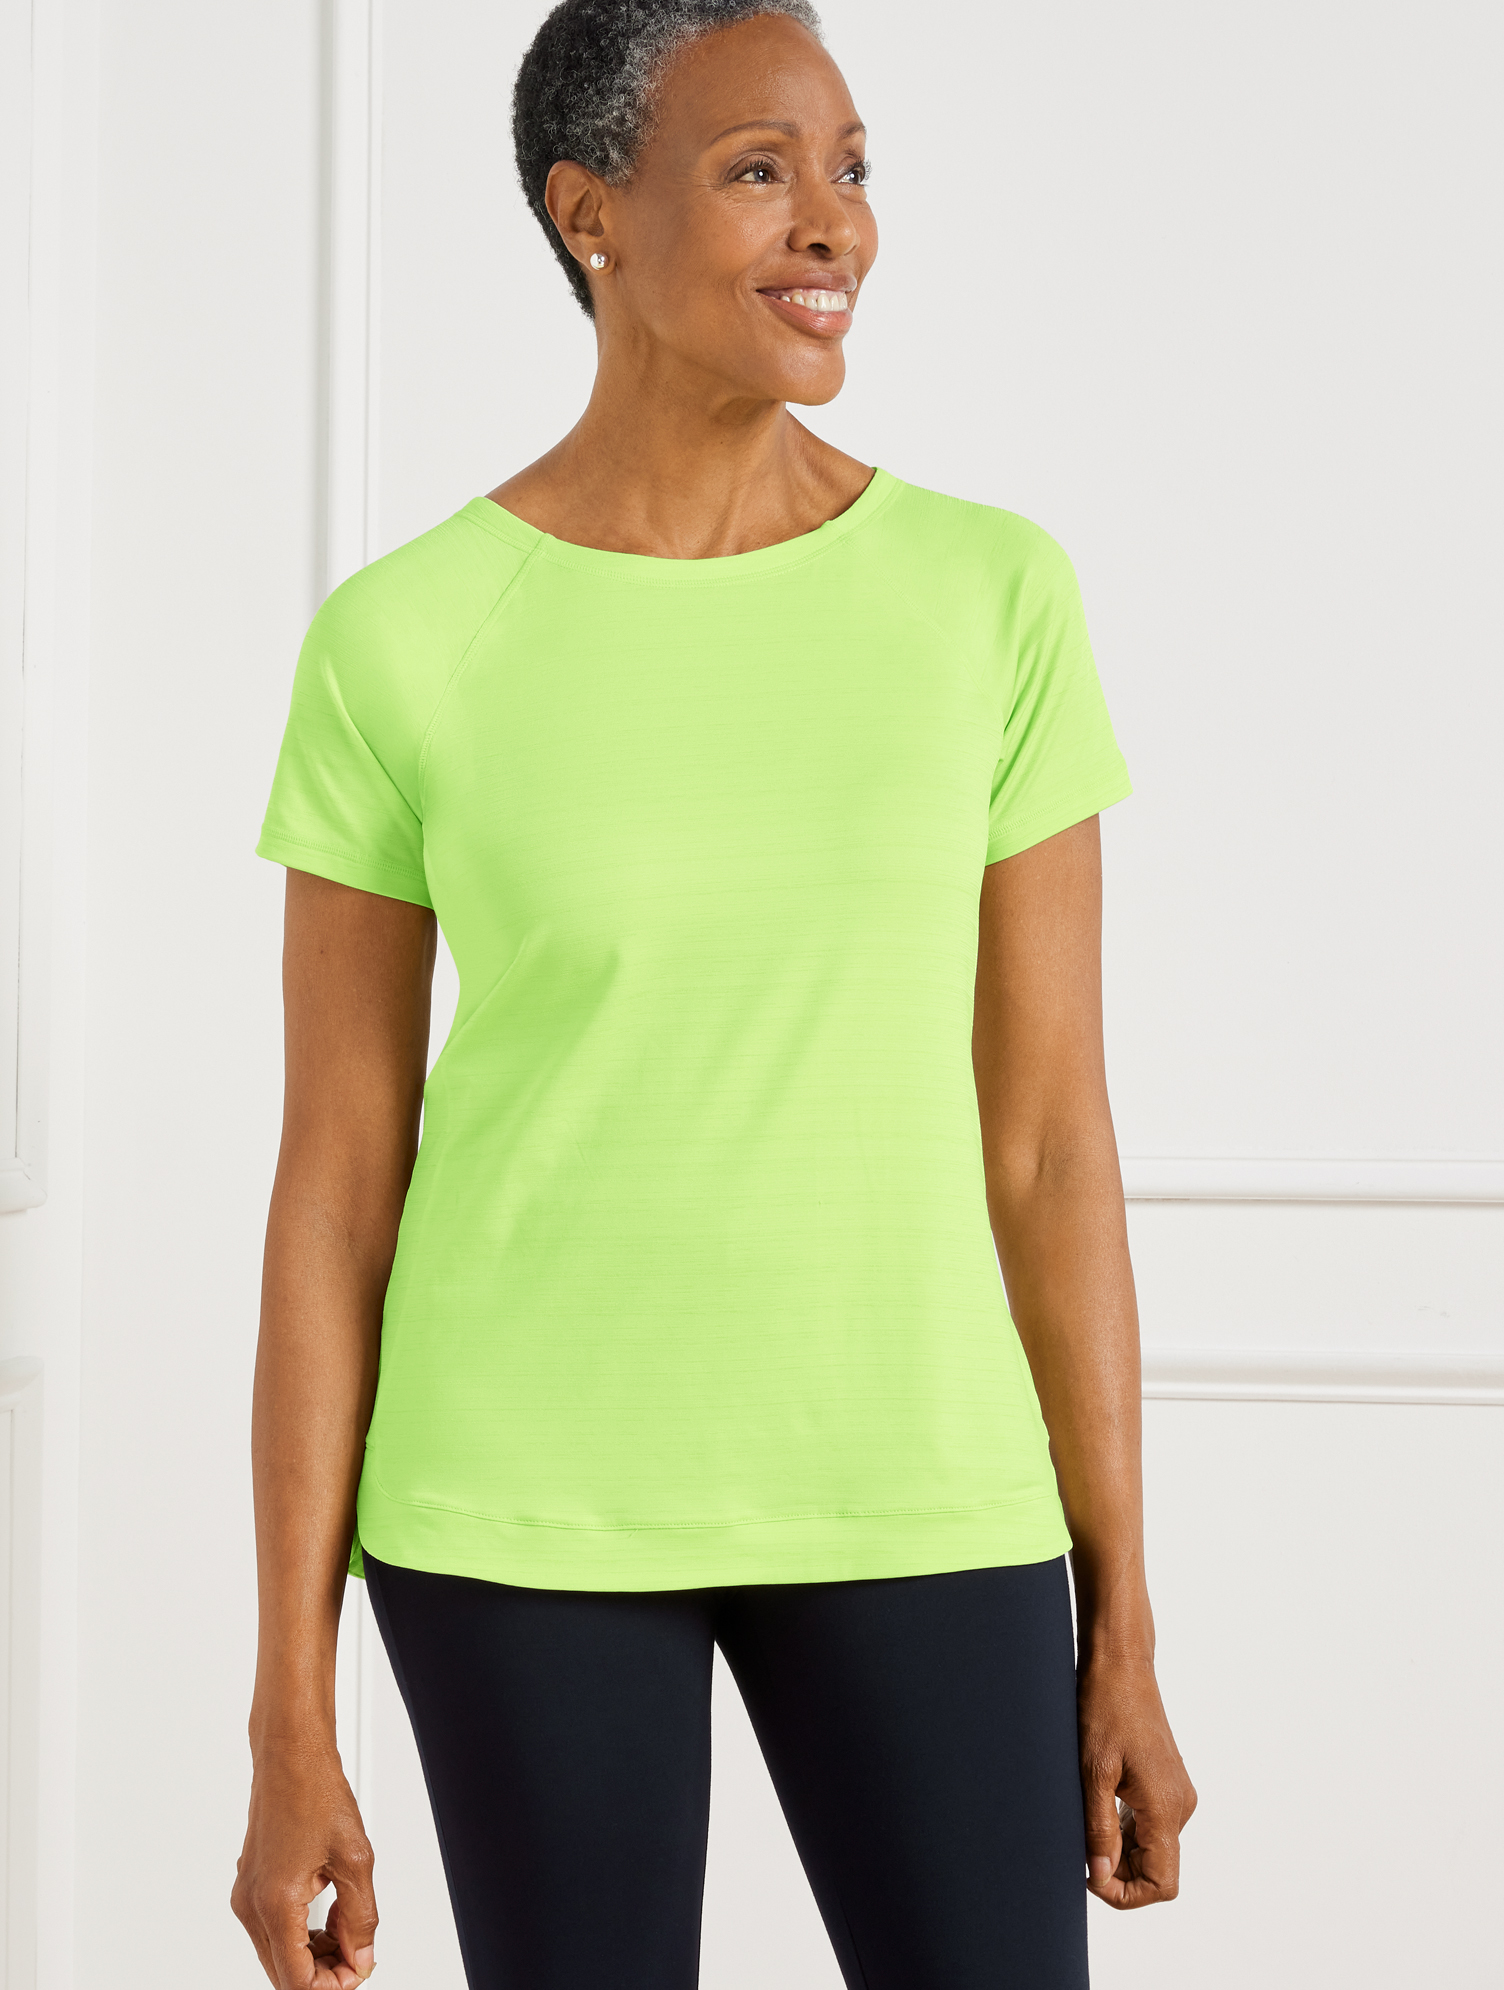 Talbots Plus Size - Cool Slub Active T-shirt - Lime Fizz - 2x